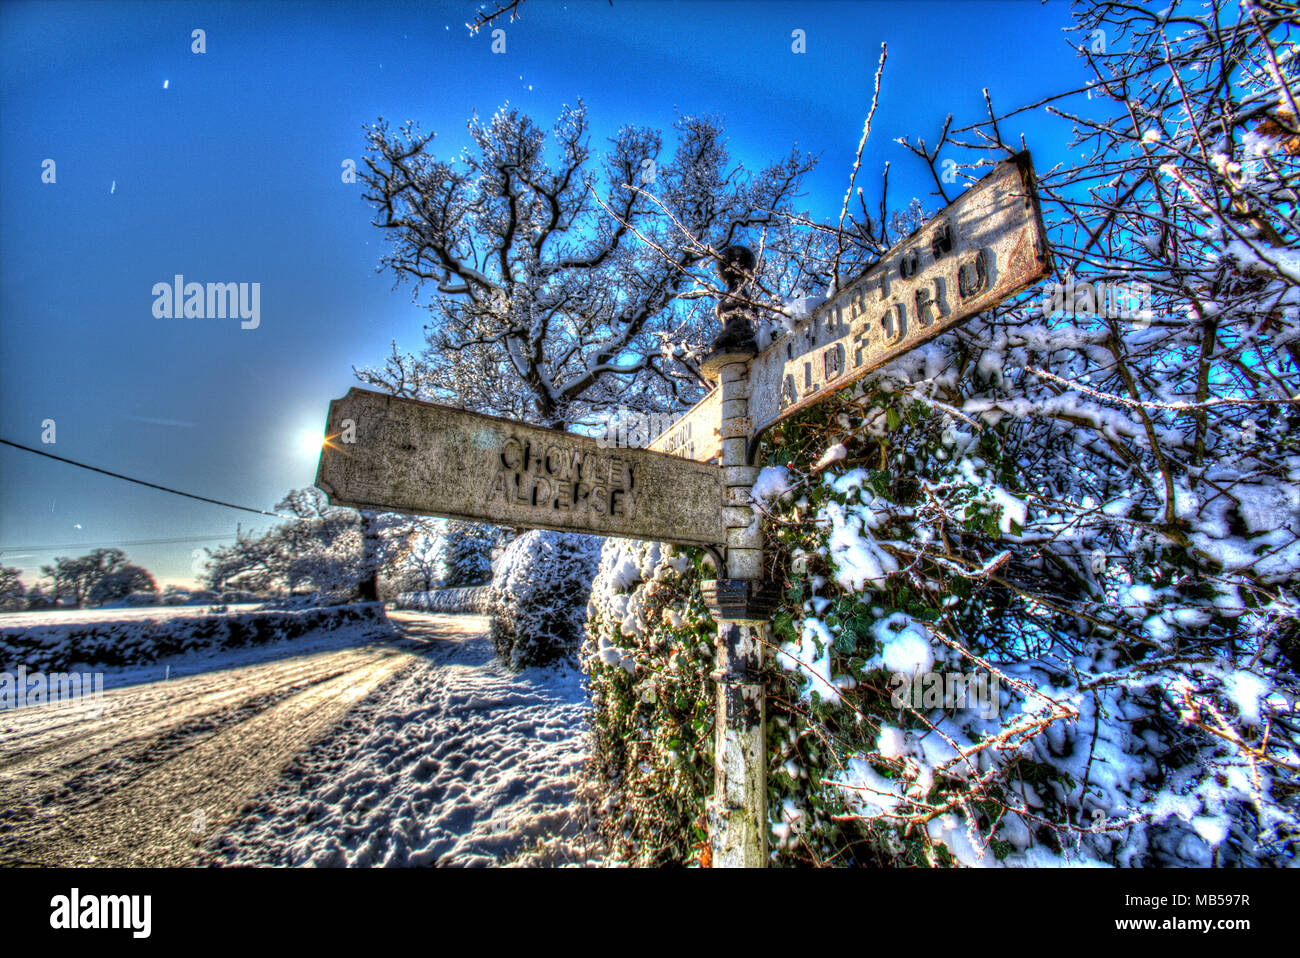 Aldea de Coddington, Inglaterra. Visión artística de un cubierto de nieve rural pre Worboys dirección firmar, en la zona rural de Cheshire. Foto de stock